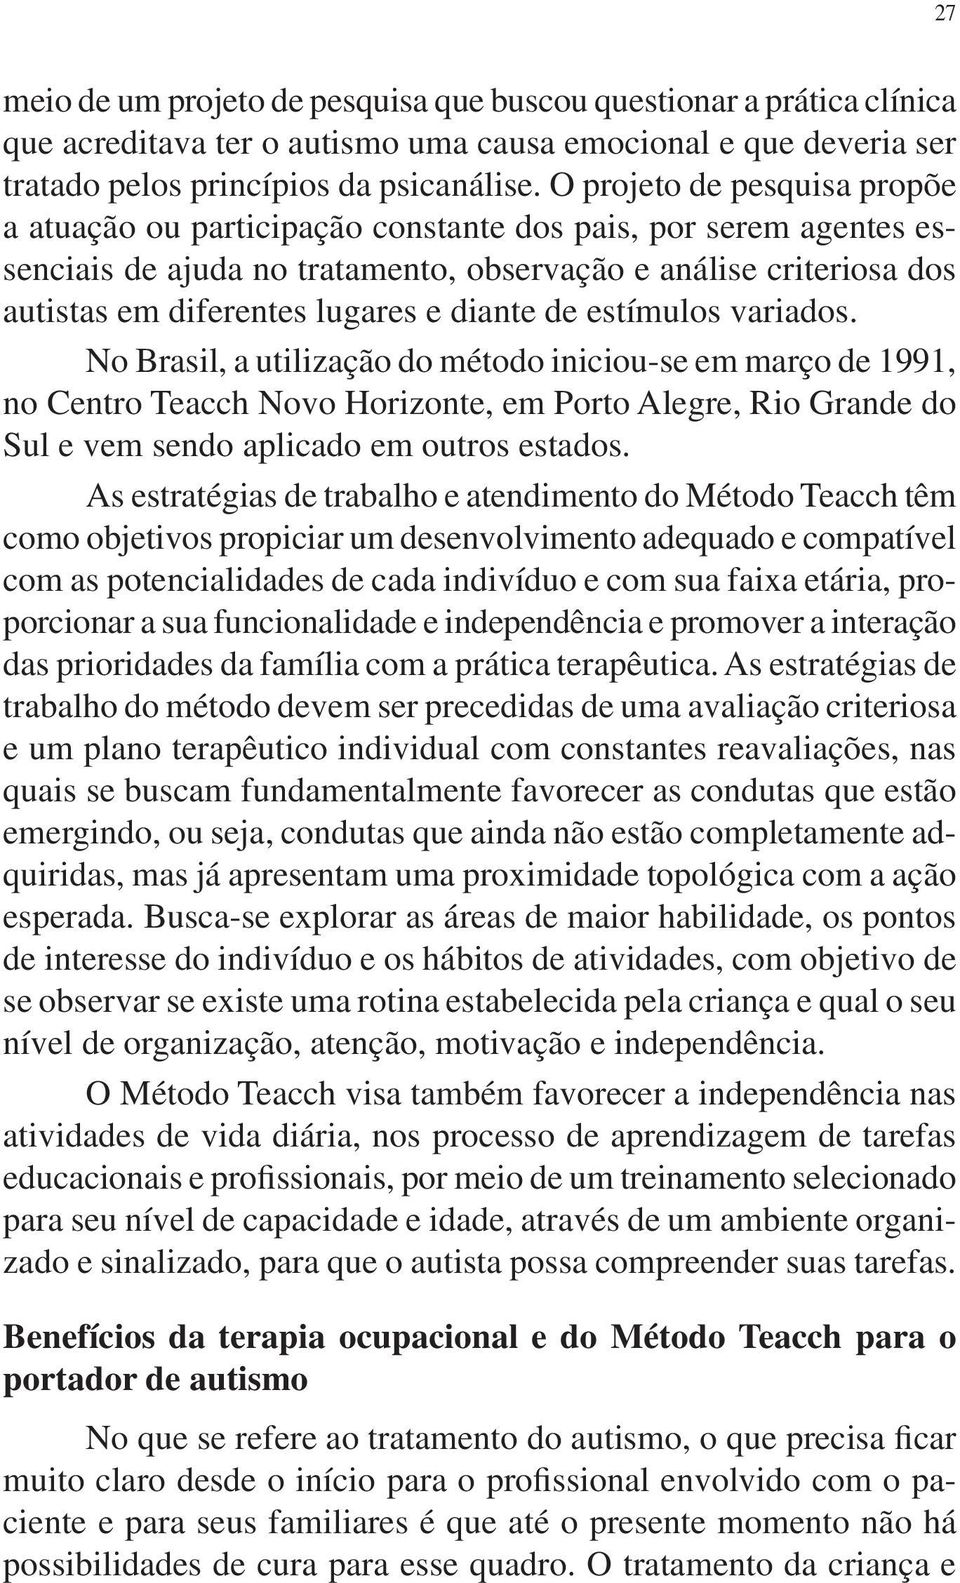 diante de estímulos variados. No Brasil, a utilização do método iniciou-se em março de 1991, no Centro Teacch Novo Horizonte, em Porto Alegre, Rio Grande do Sul e vem sendo aplicado em outros estados.